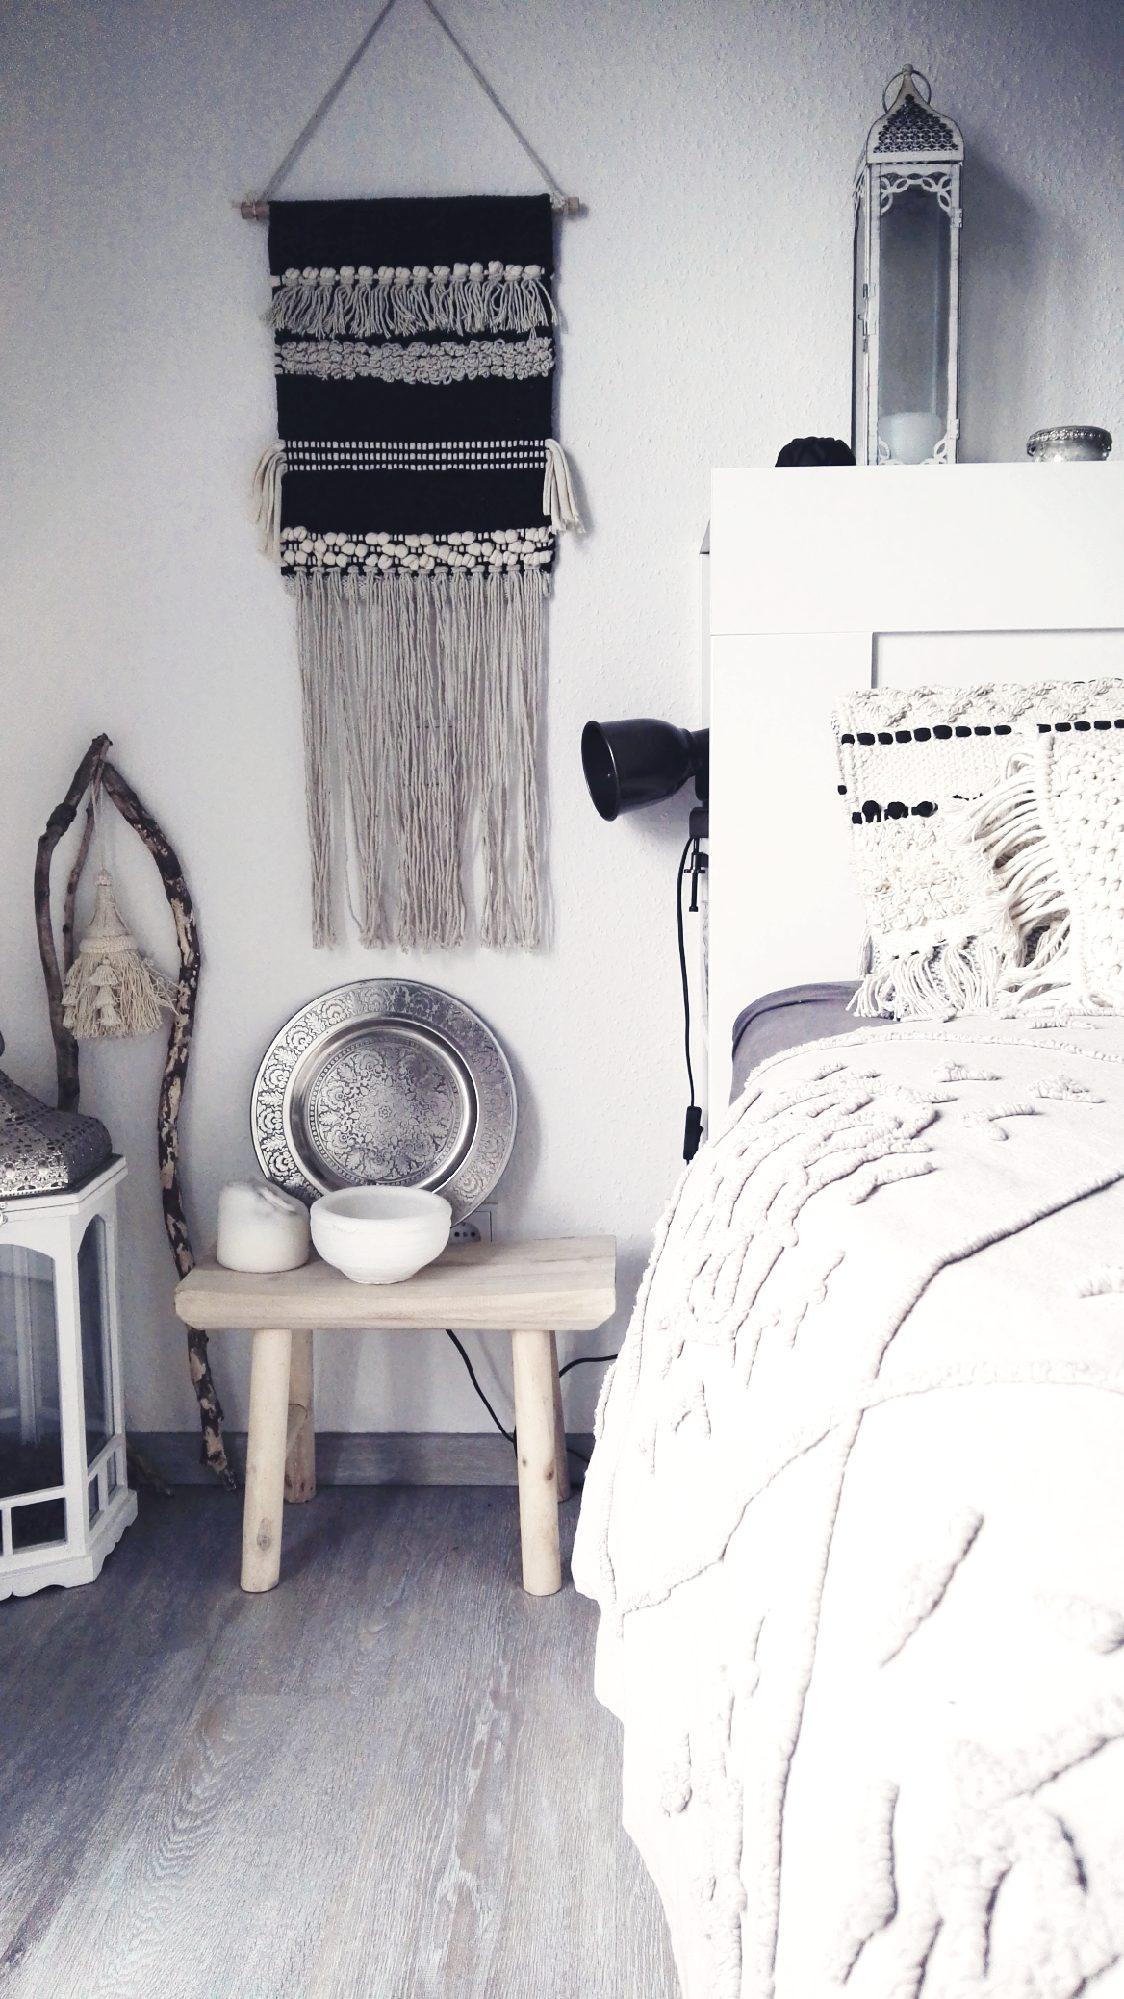 Schlafzimmer <3
#coastalboho #bohemiandecor #scandiboho #bohostyle #bohemianstyle #whiteboho #boholove #bohocushion 